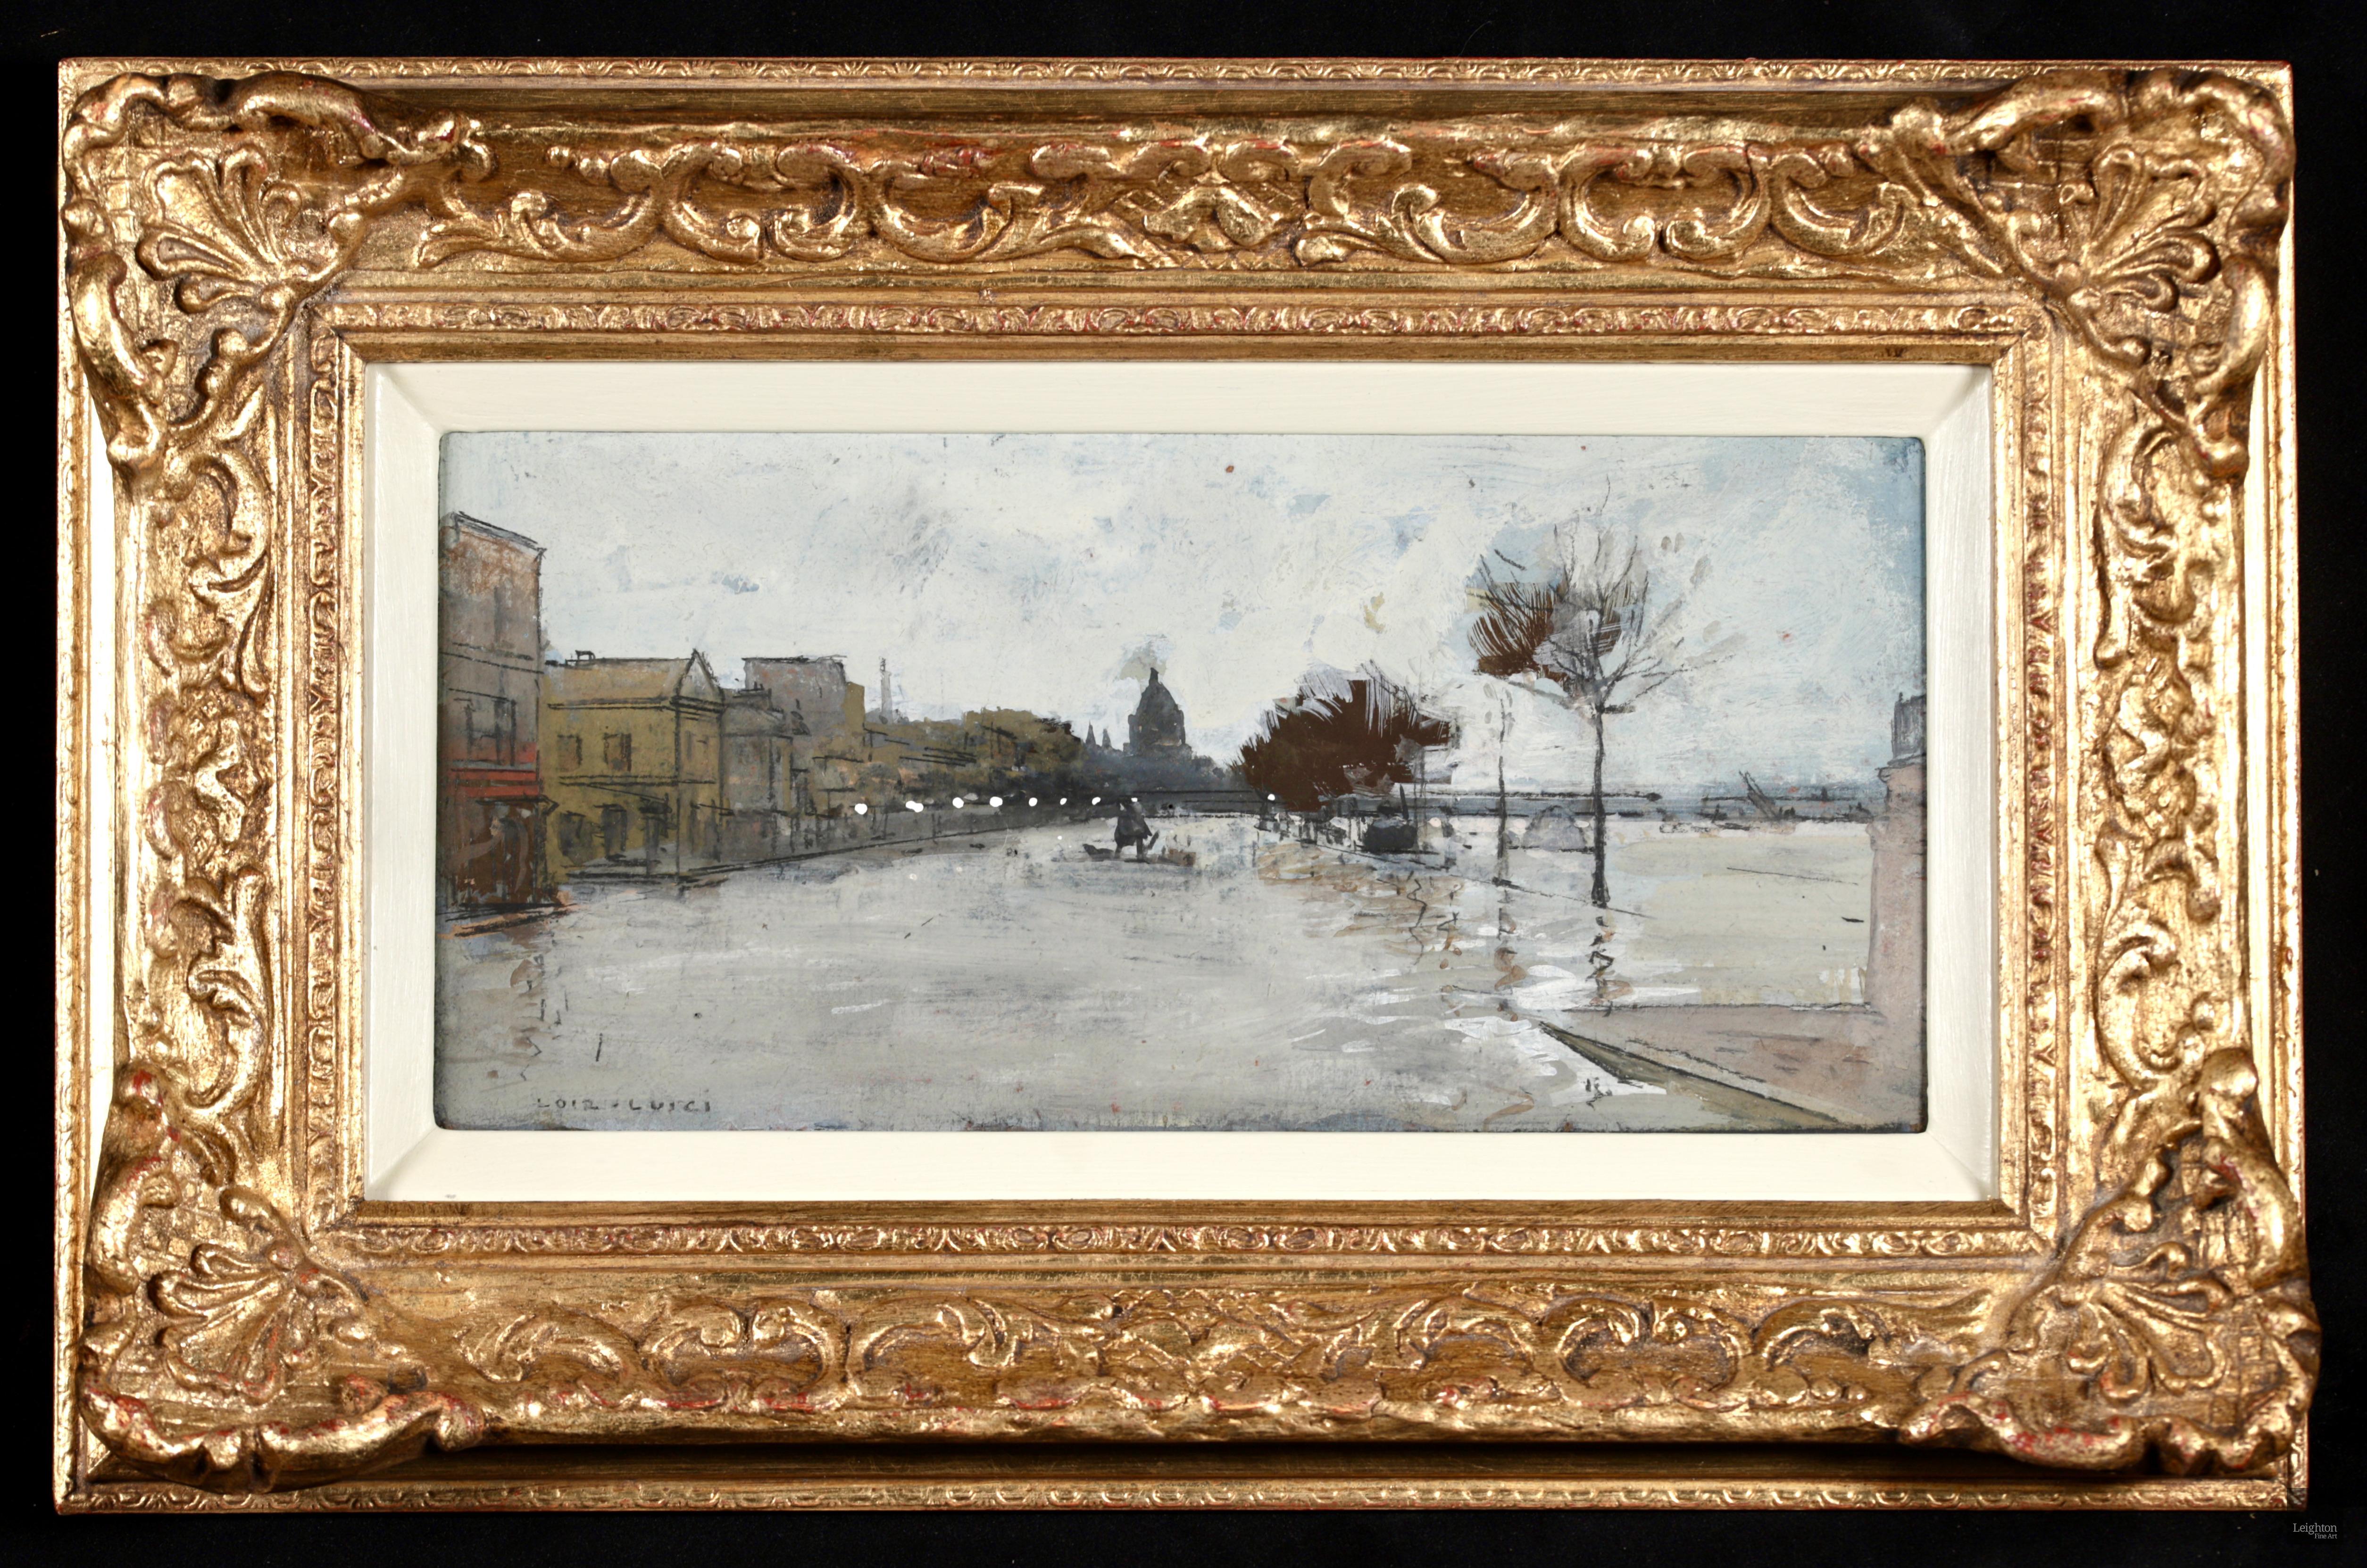 Paysage impressionniste à la gouache sur carton signé du peintre français Luigi Loir. Cette œuvre dépeint la célèbre inondation de Paris en 1910, lorsque la Seine est sortie de son lit lors de la plus grande inondation que la ville ait connue en 100